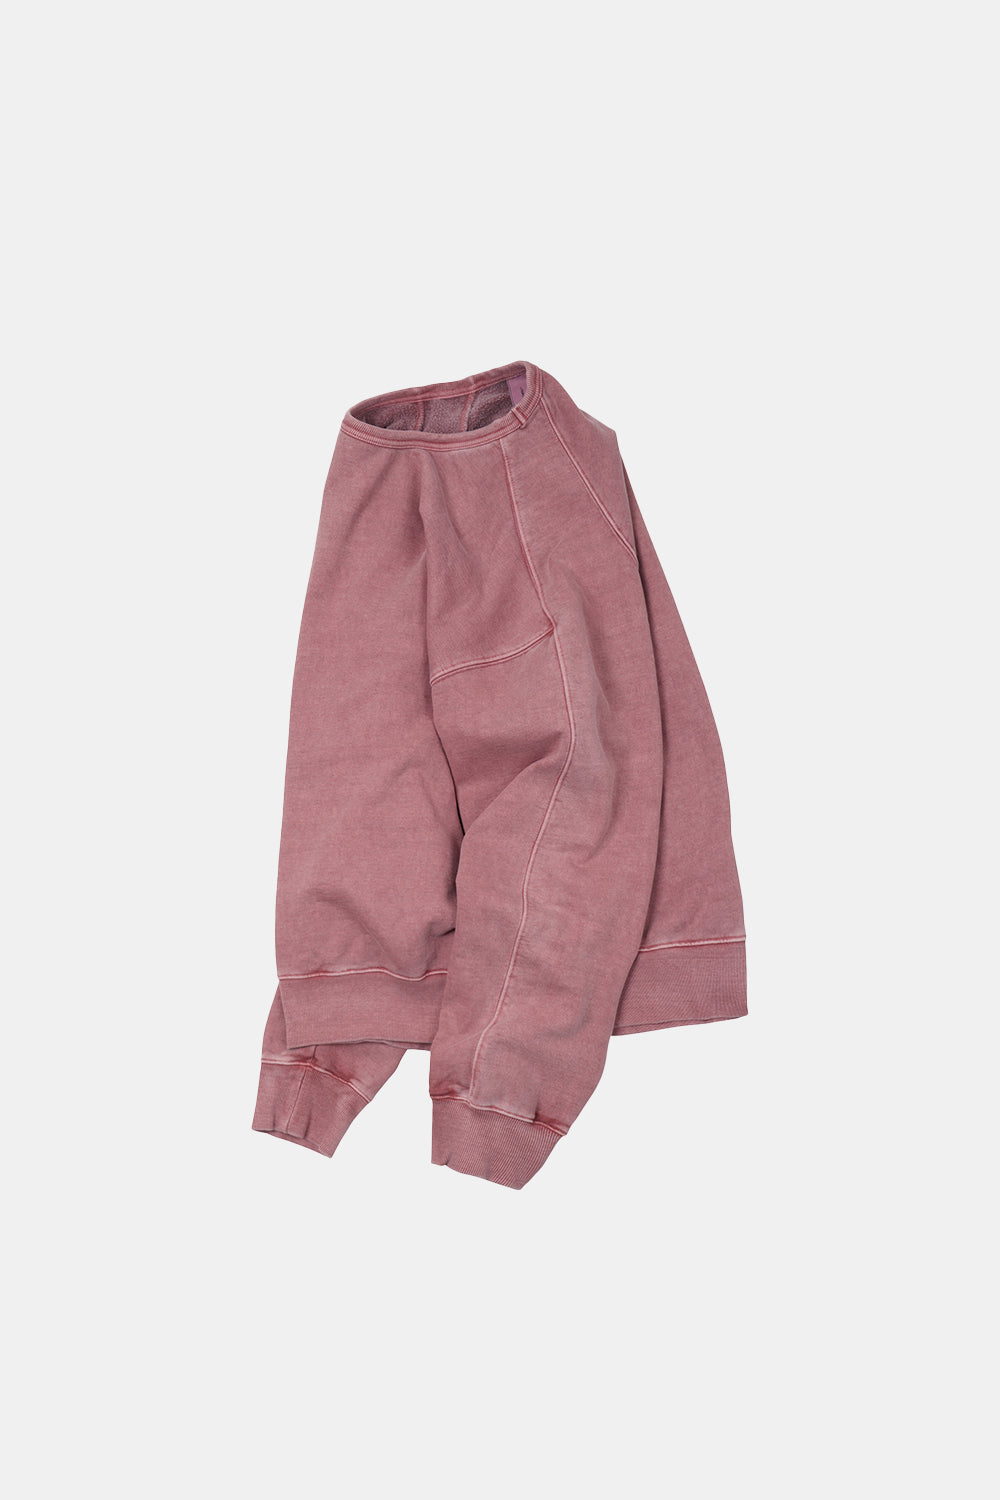 Frizmworks OG Pigment Dyeing Sweatshirt (Pink)